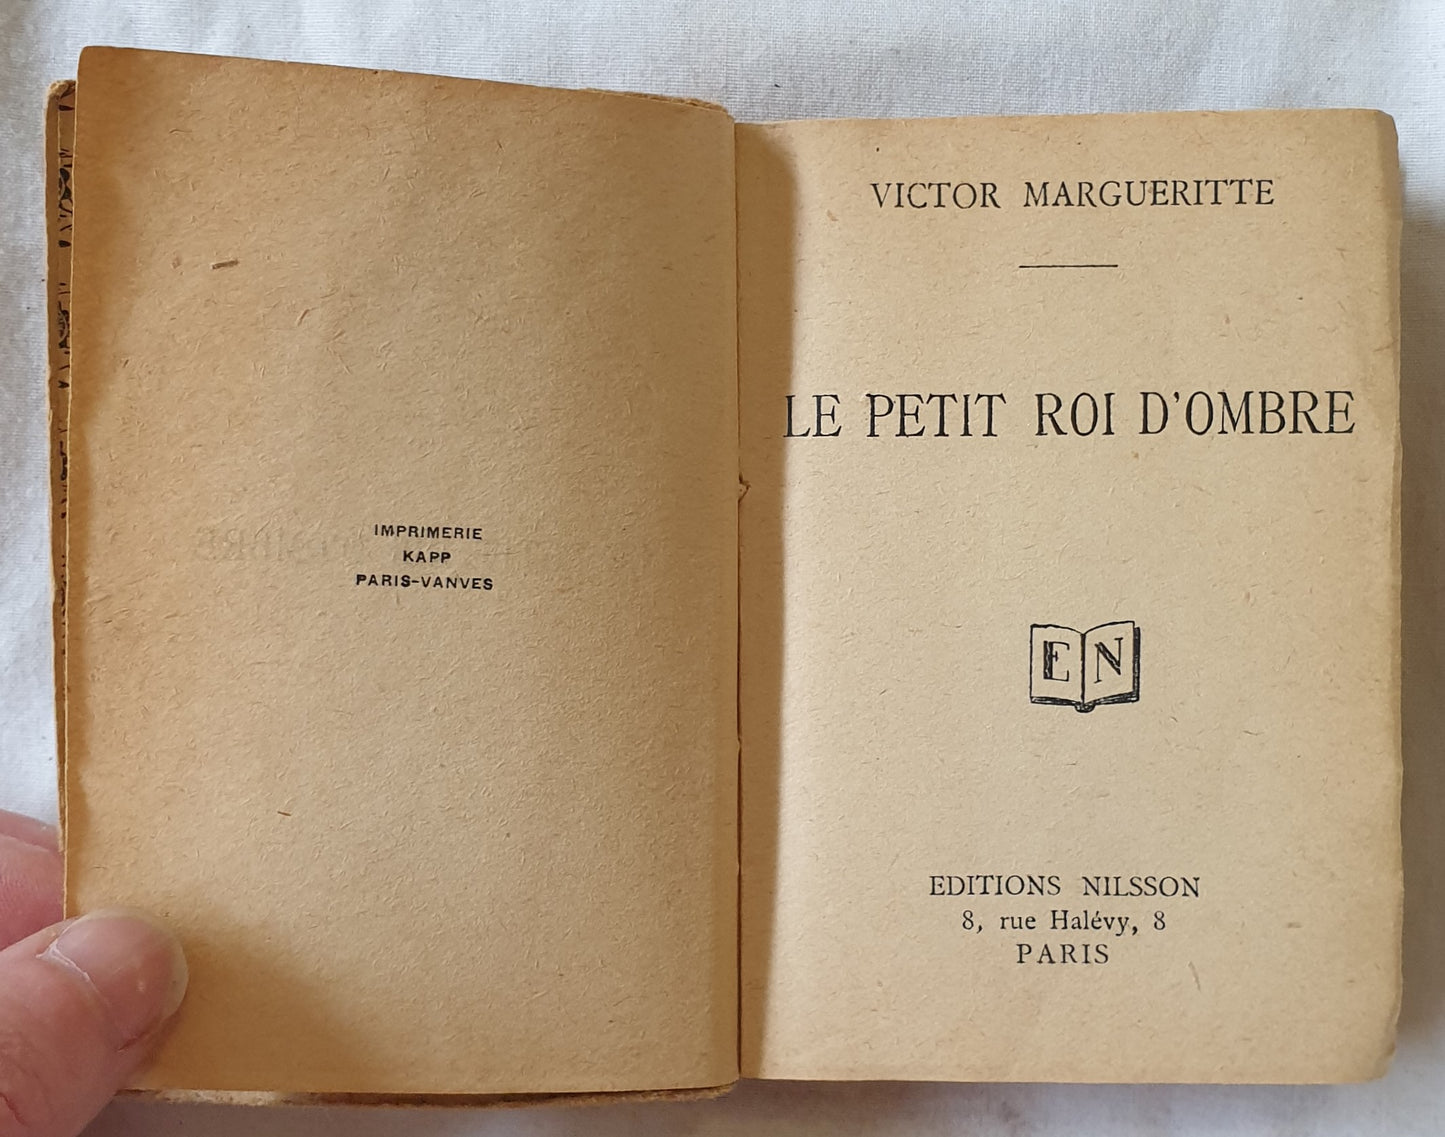 Le Petit Roi D’Ombre by Victor Margueritte